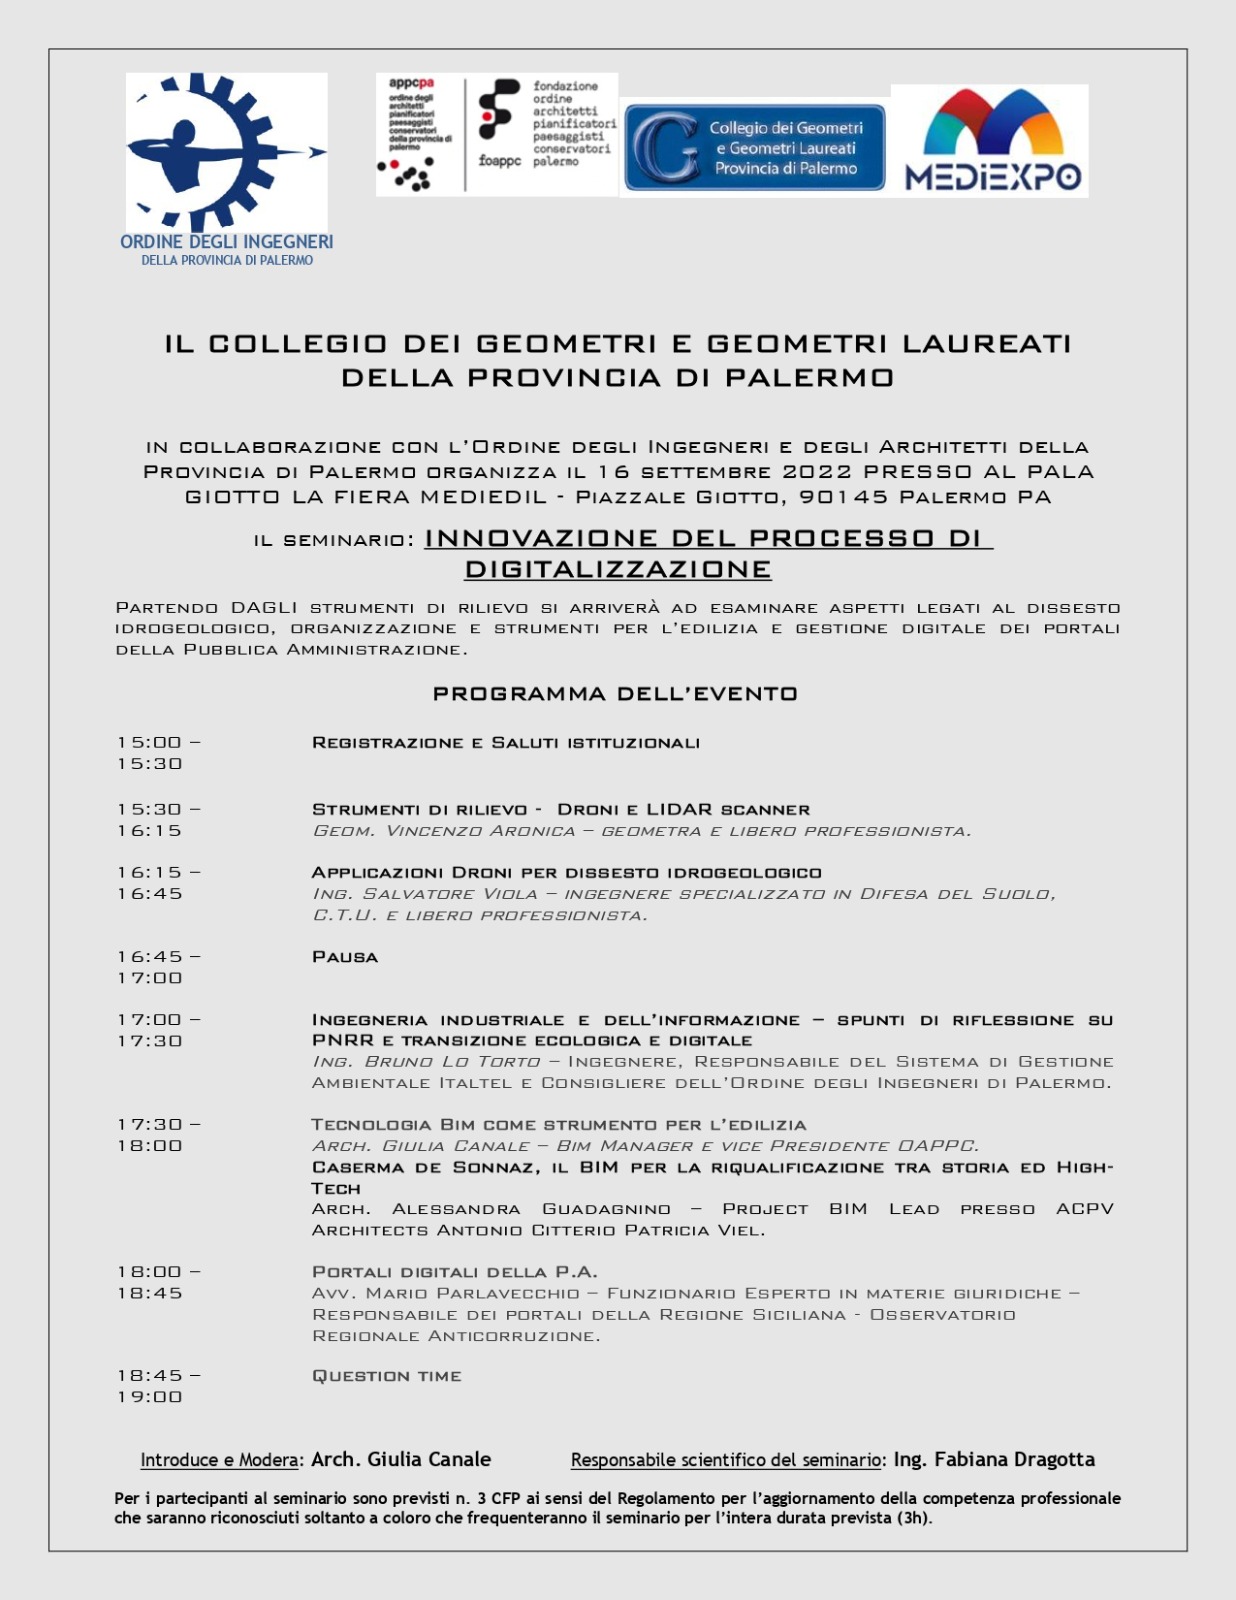 Foto 1 - Polo Fieristico “PalaGiotto” di Palermo, seminario del Collegio dei Geometri su innovazione, dissesto idrogeologico e portali della pubblica amministrazione